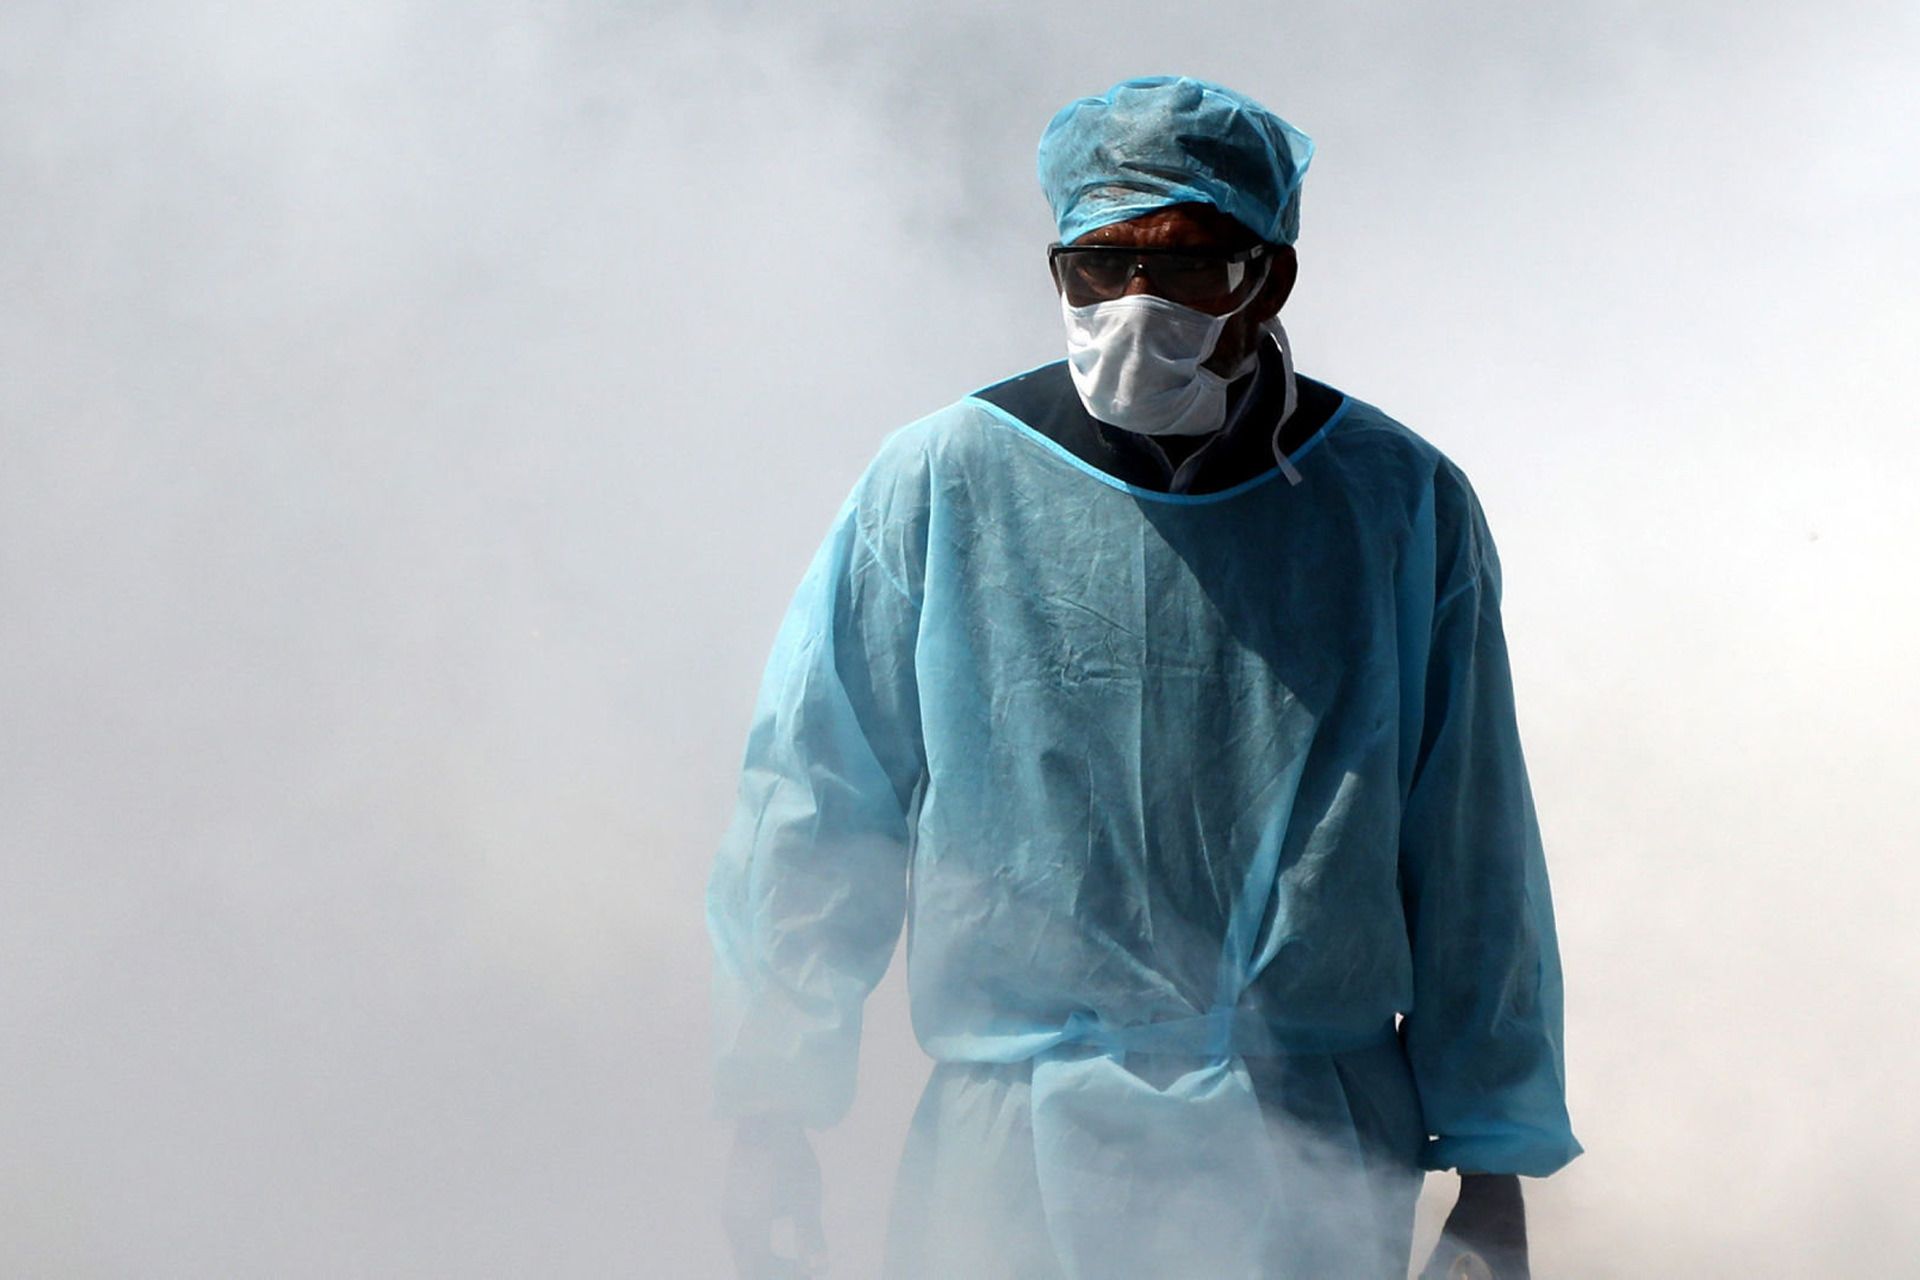 مرد پرستار با لباس آبی و ماسک مخصوص ویروس کرونا / کووید 19